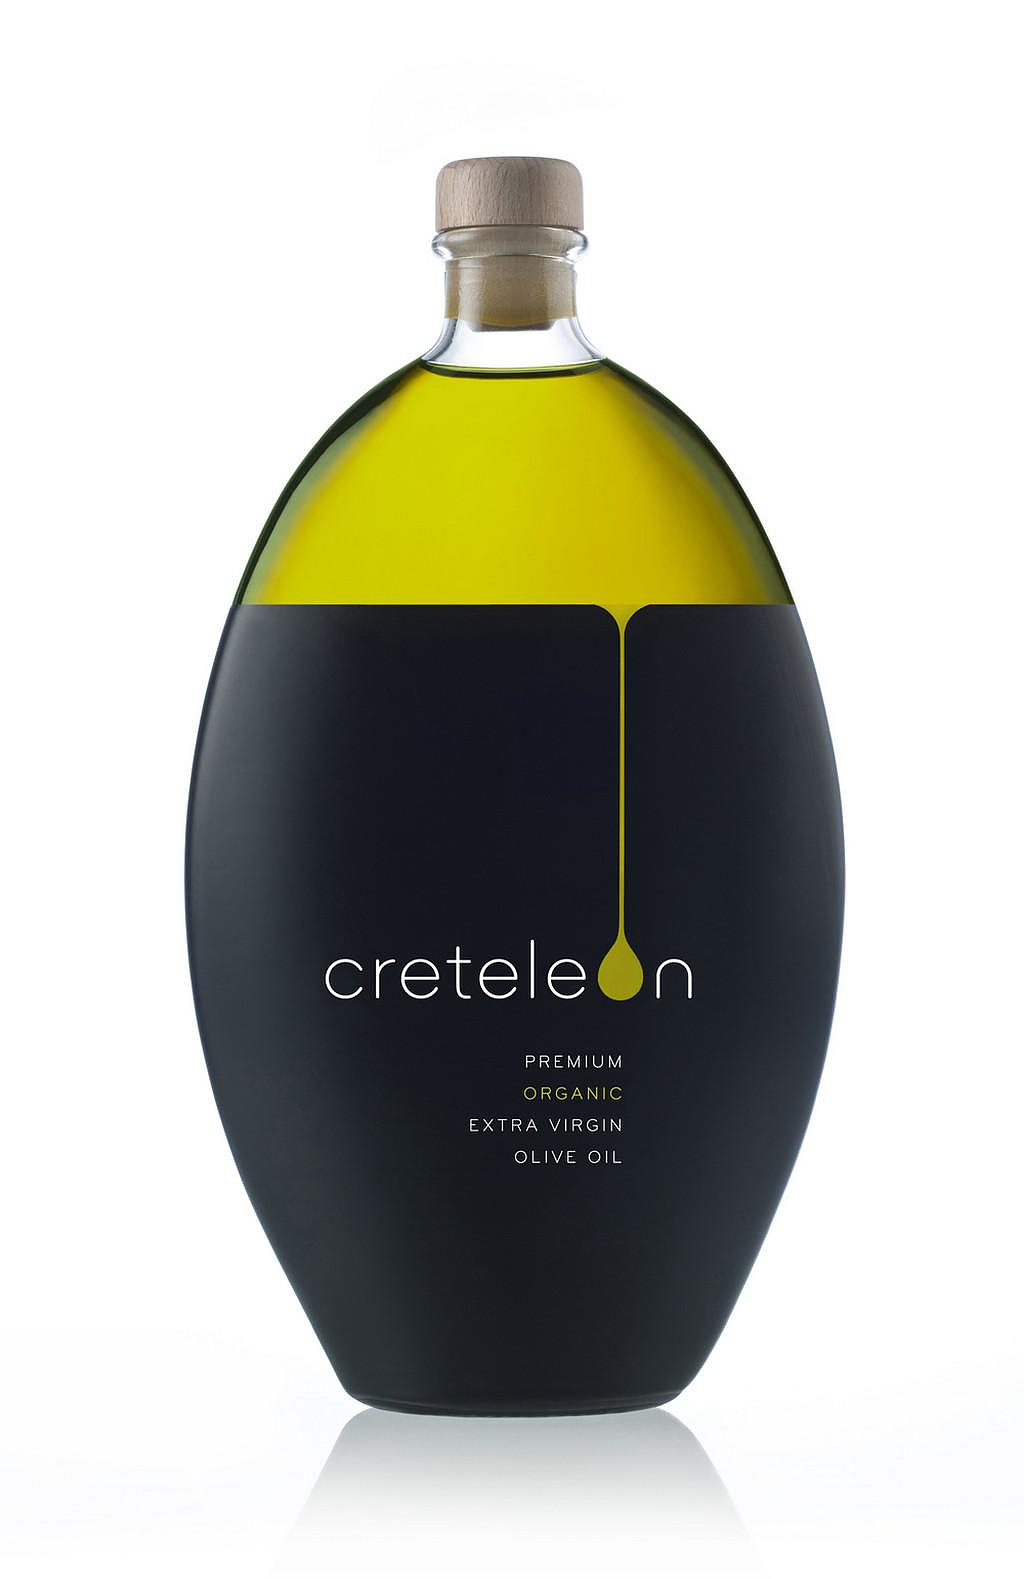 Creteleon Minimalist Olive Oil Packaging.